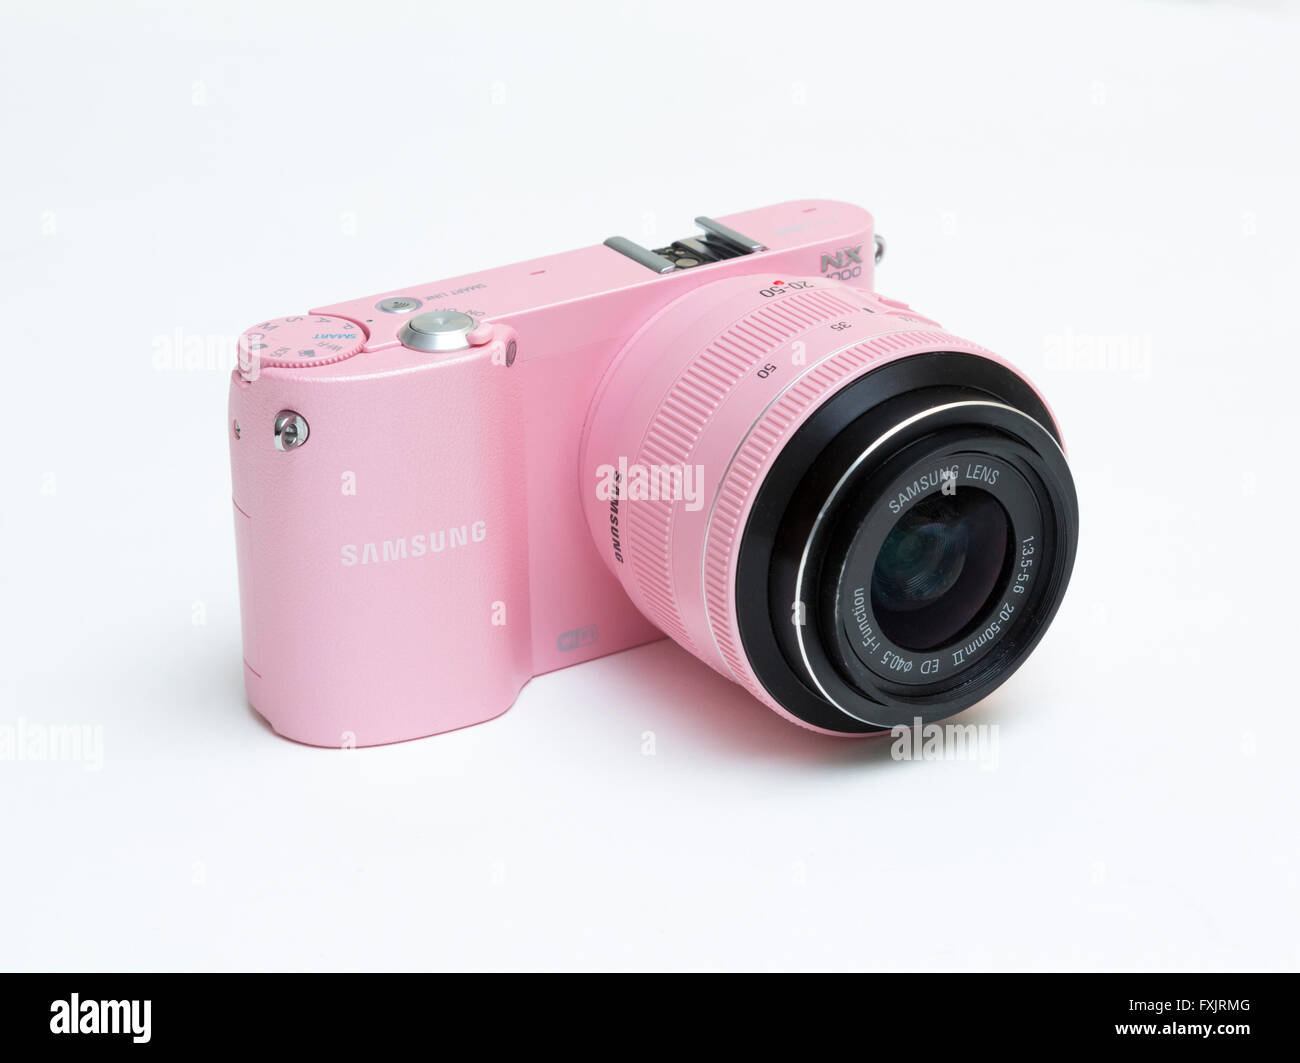 Appareil photo numérique Samsung rose Banque D'Images